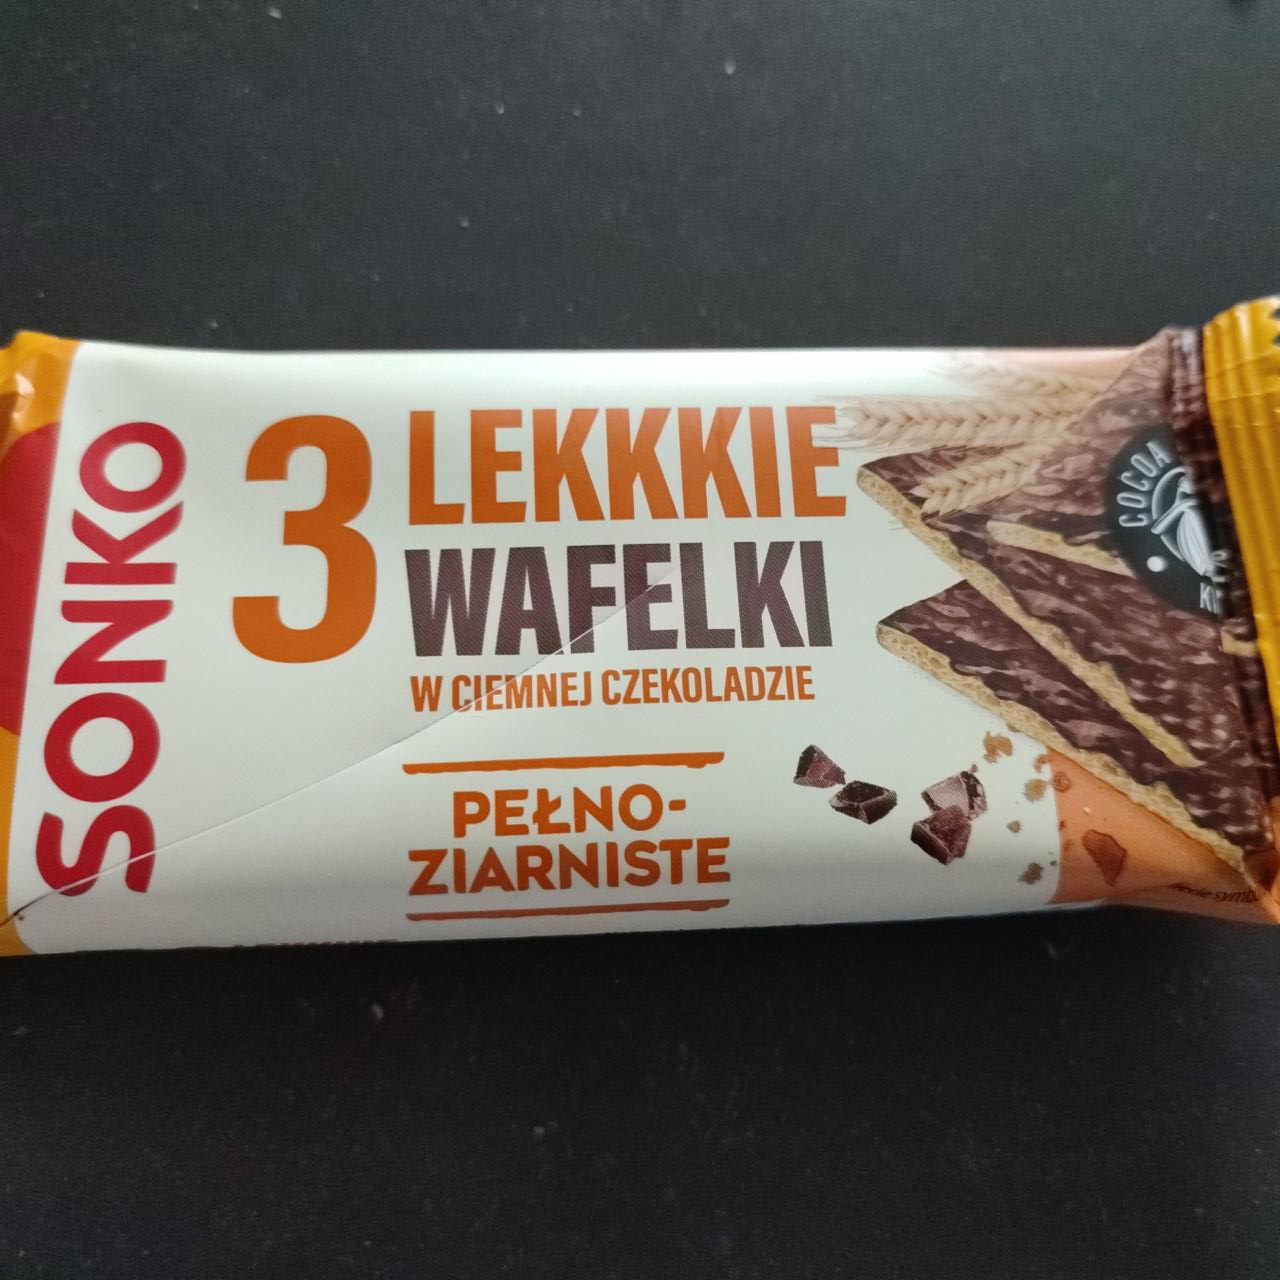 Fotografie - Lekkkie wafelki pełnoziarniste w ciemnej czekoladzie Sonko